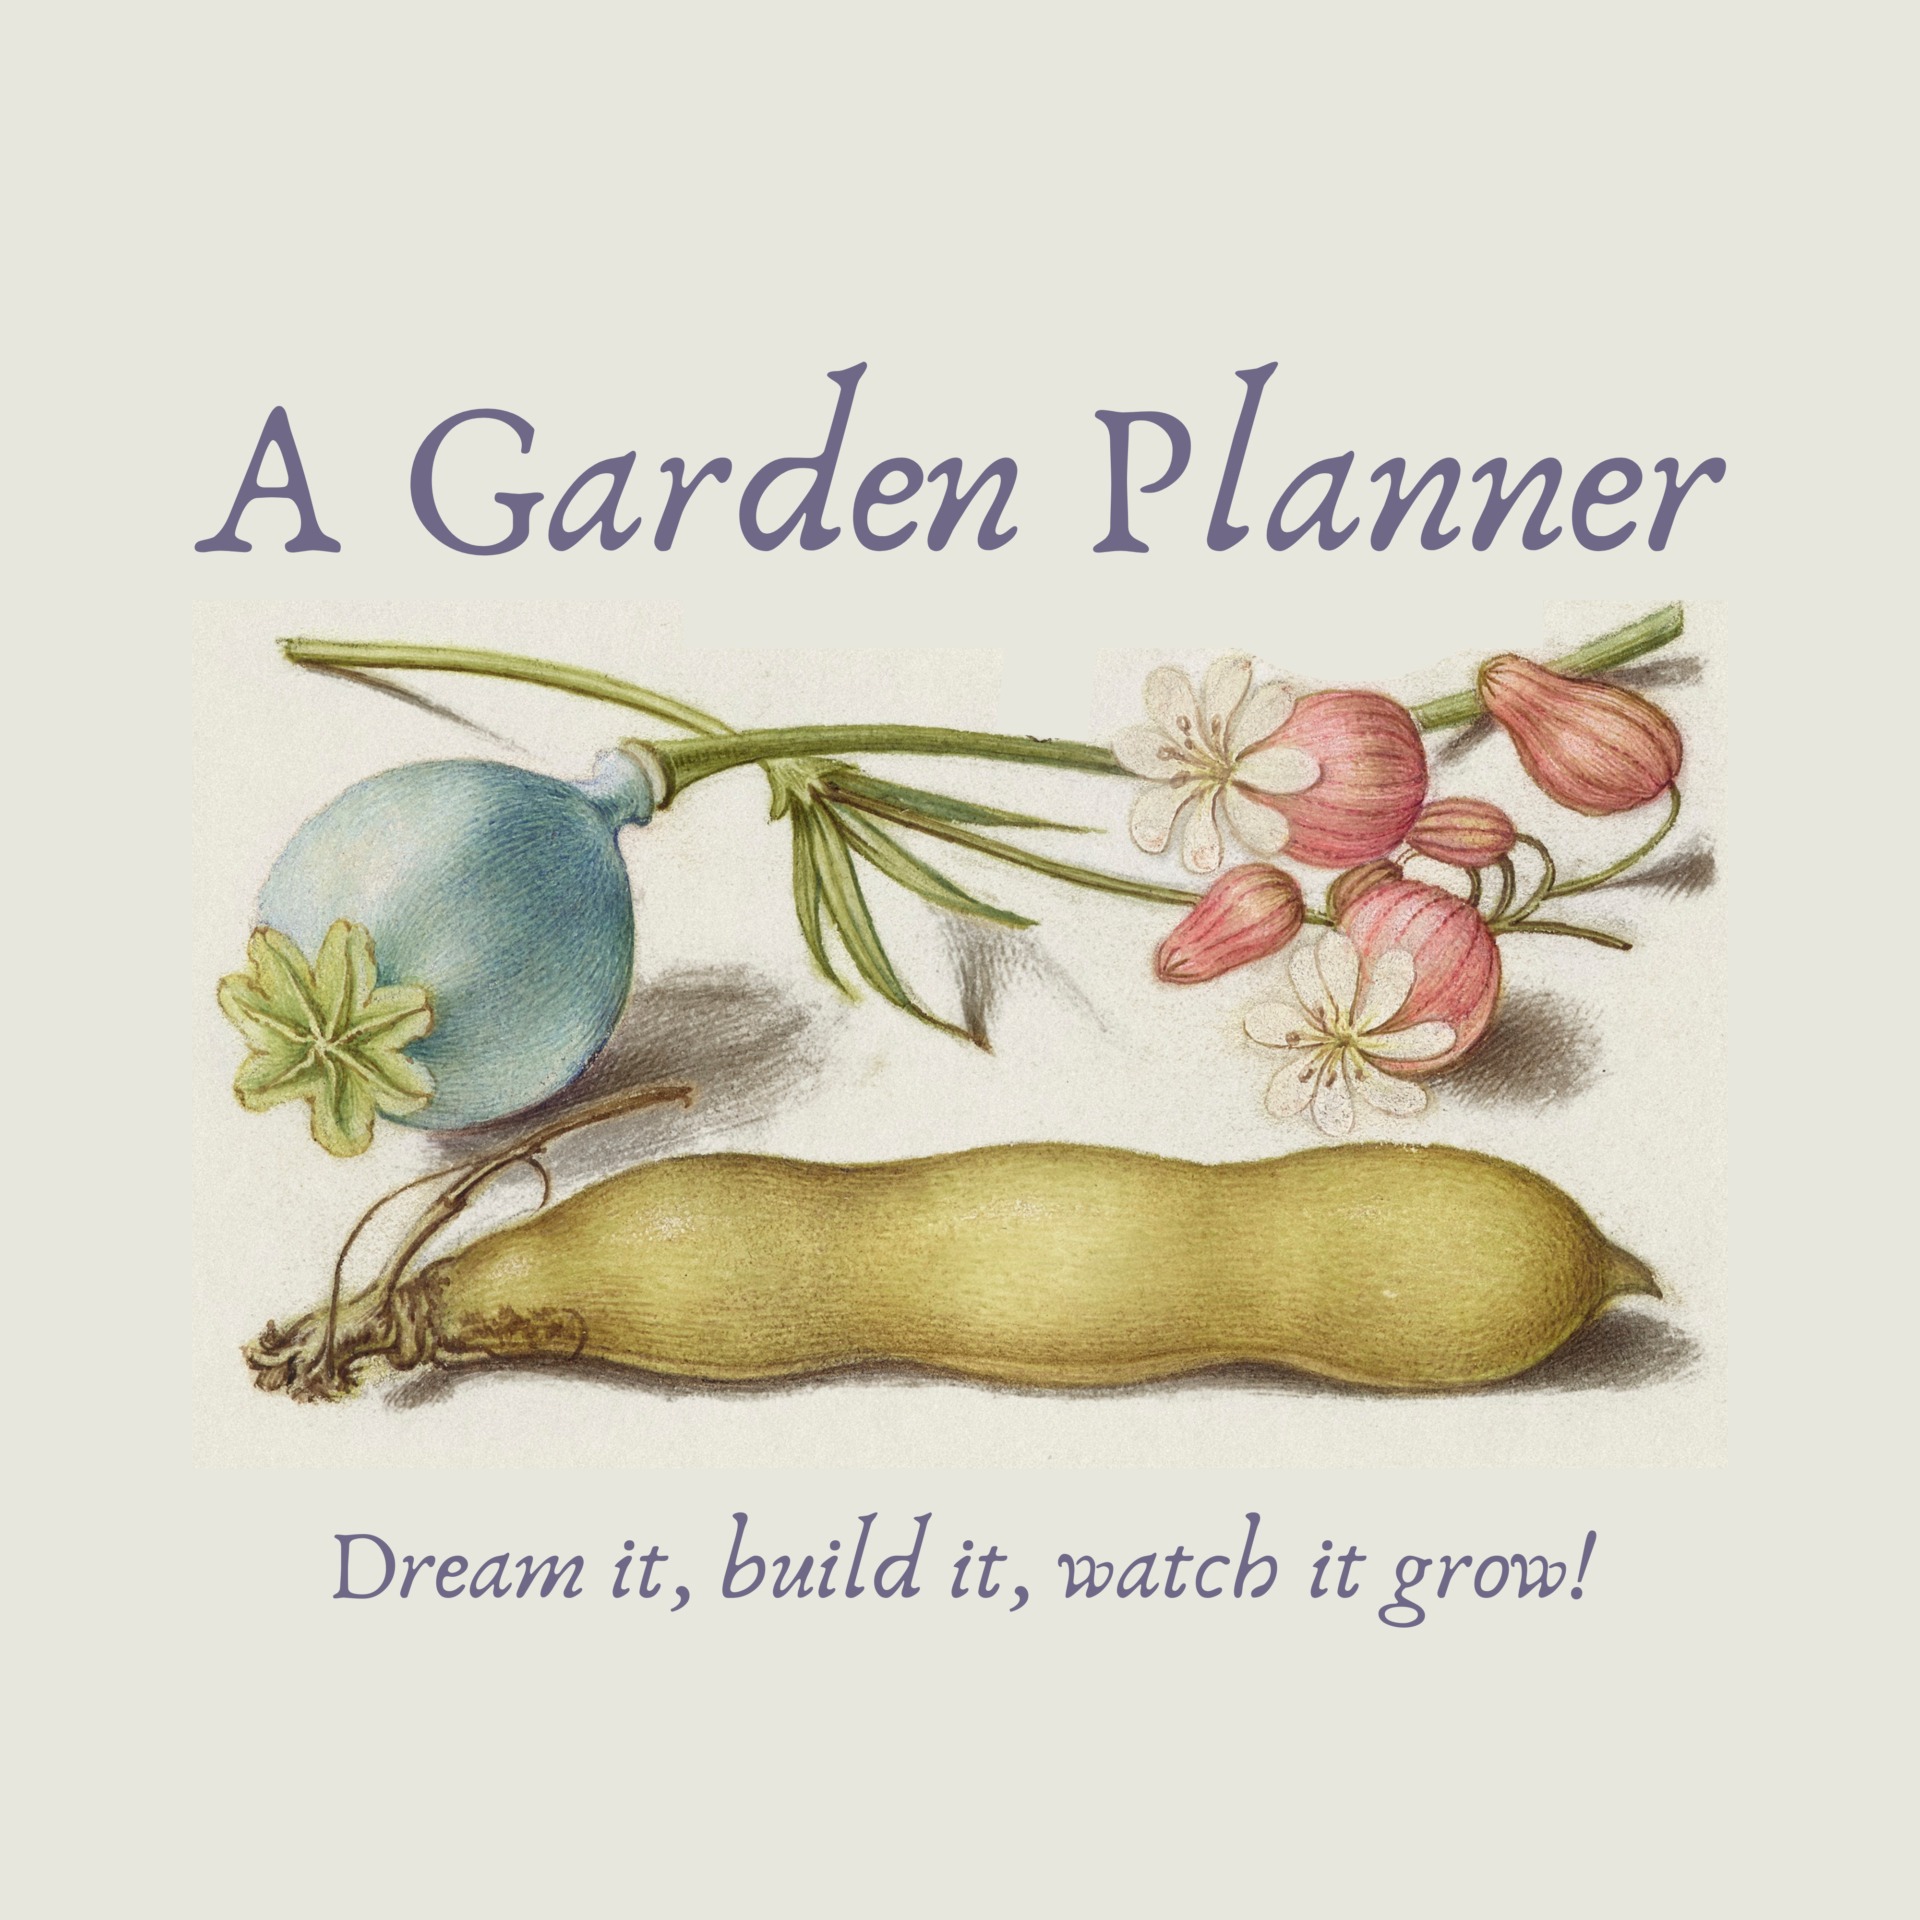 A Garden Planner: Dream it, build it, watch it grow! by Amy M Adams